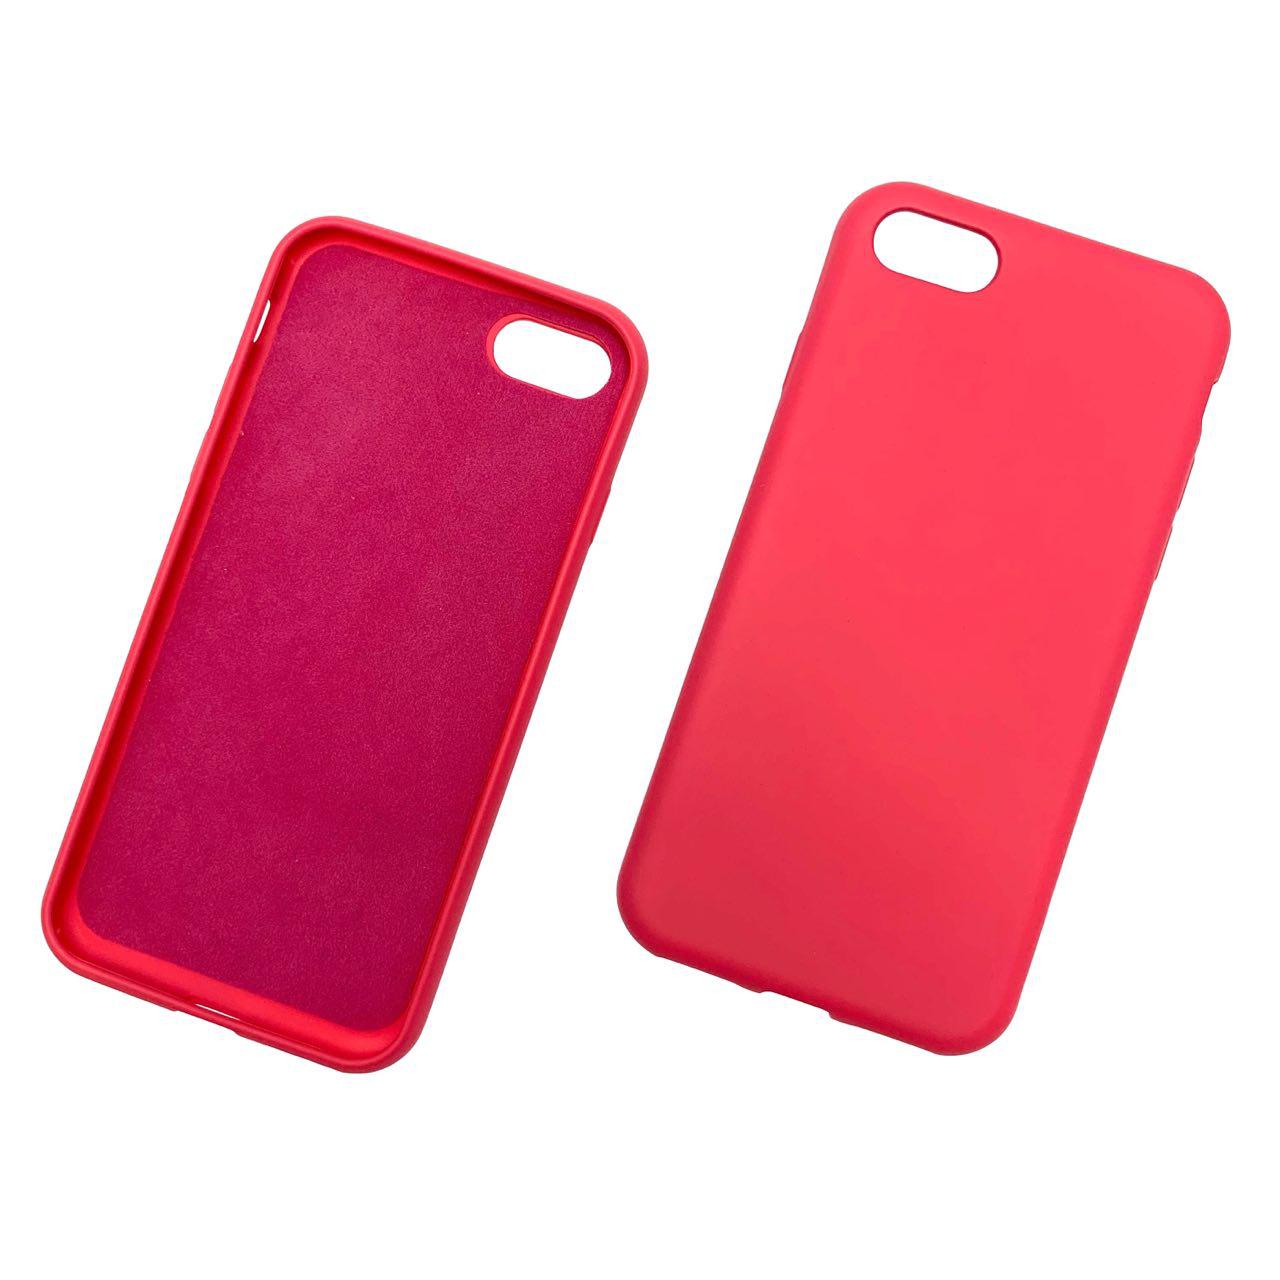 Чехол накладка для APPLE iPhone 7, 8, силикон, цвет бордовый.